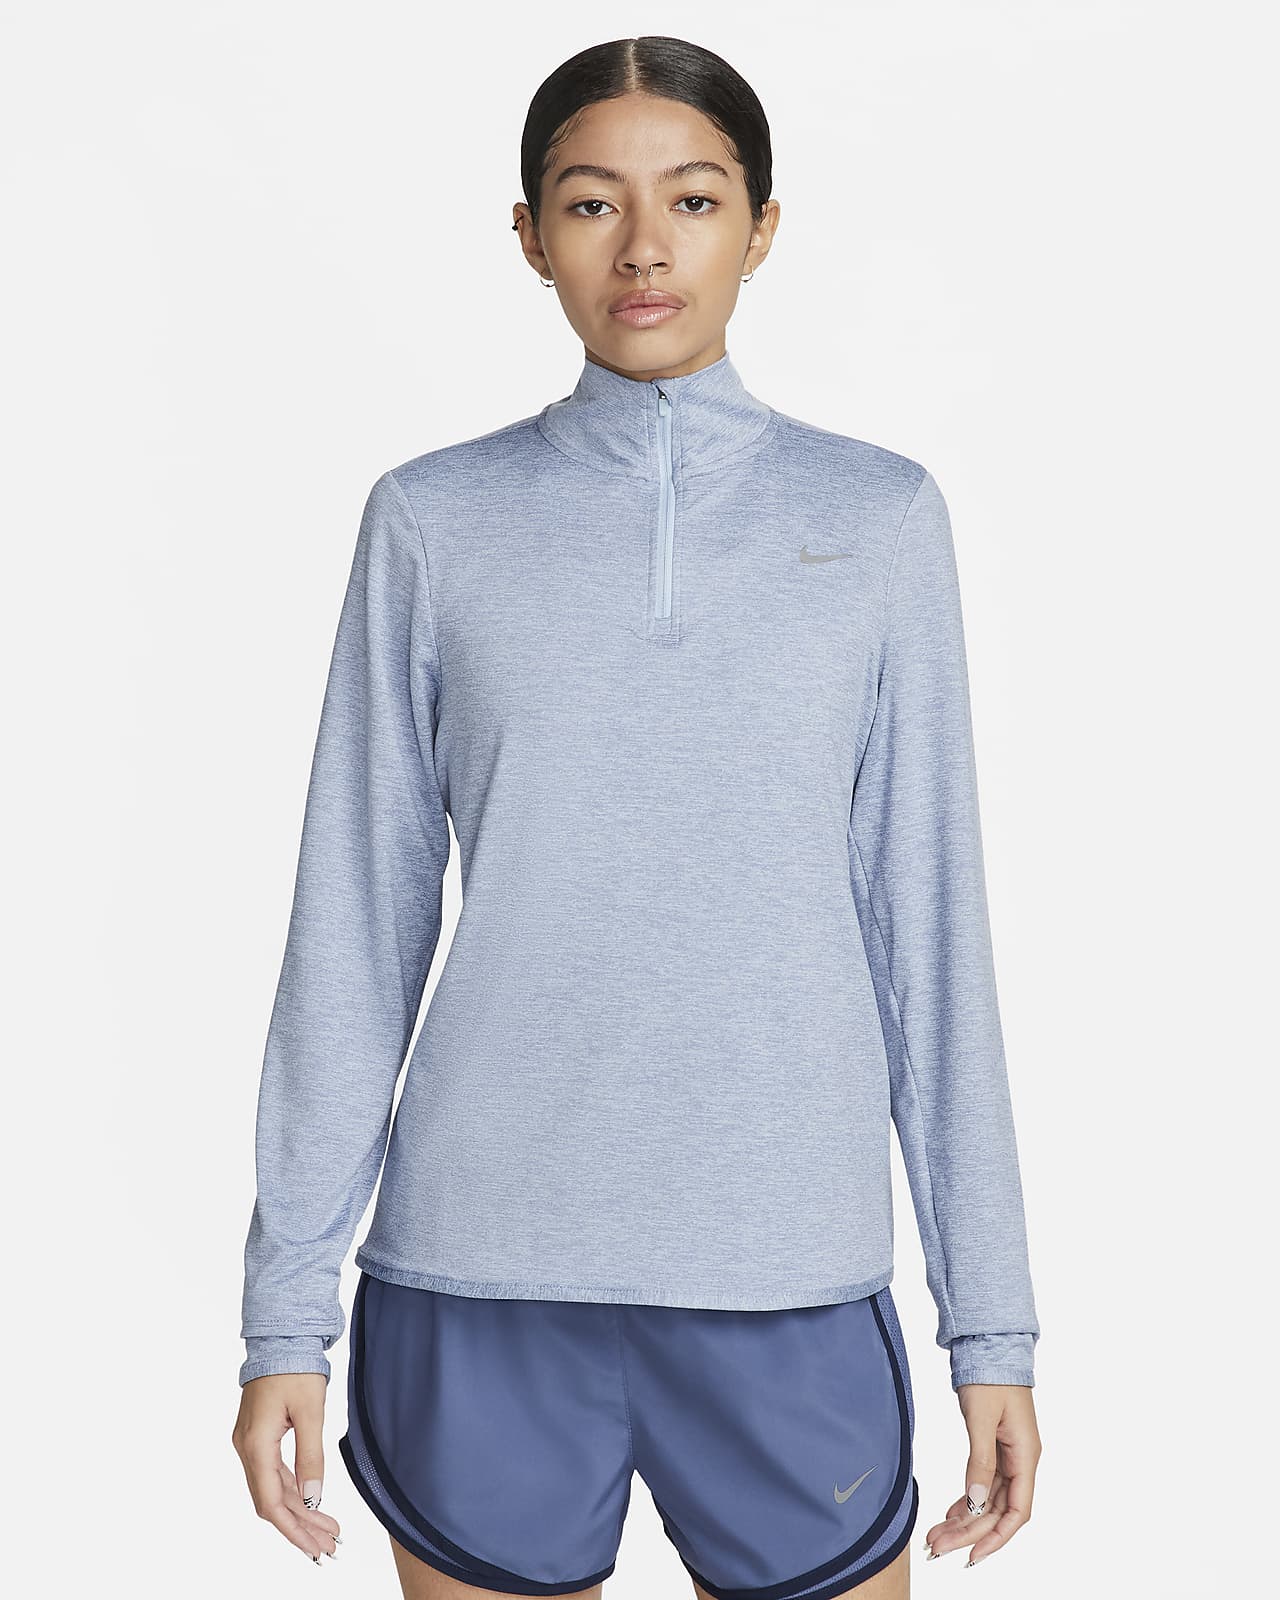 Nike Swift hardlooptop met korte rits en UV-bescherming voor dames